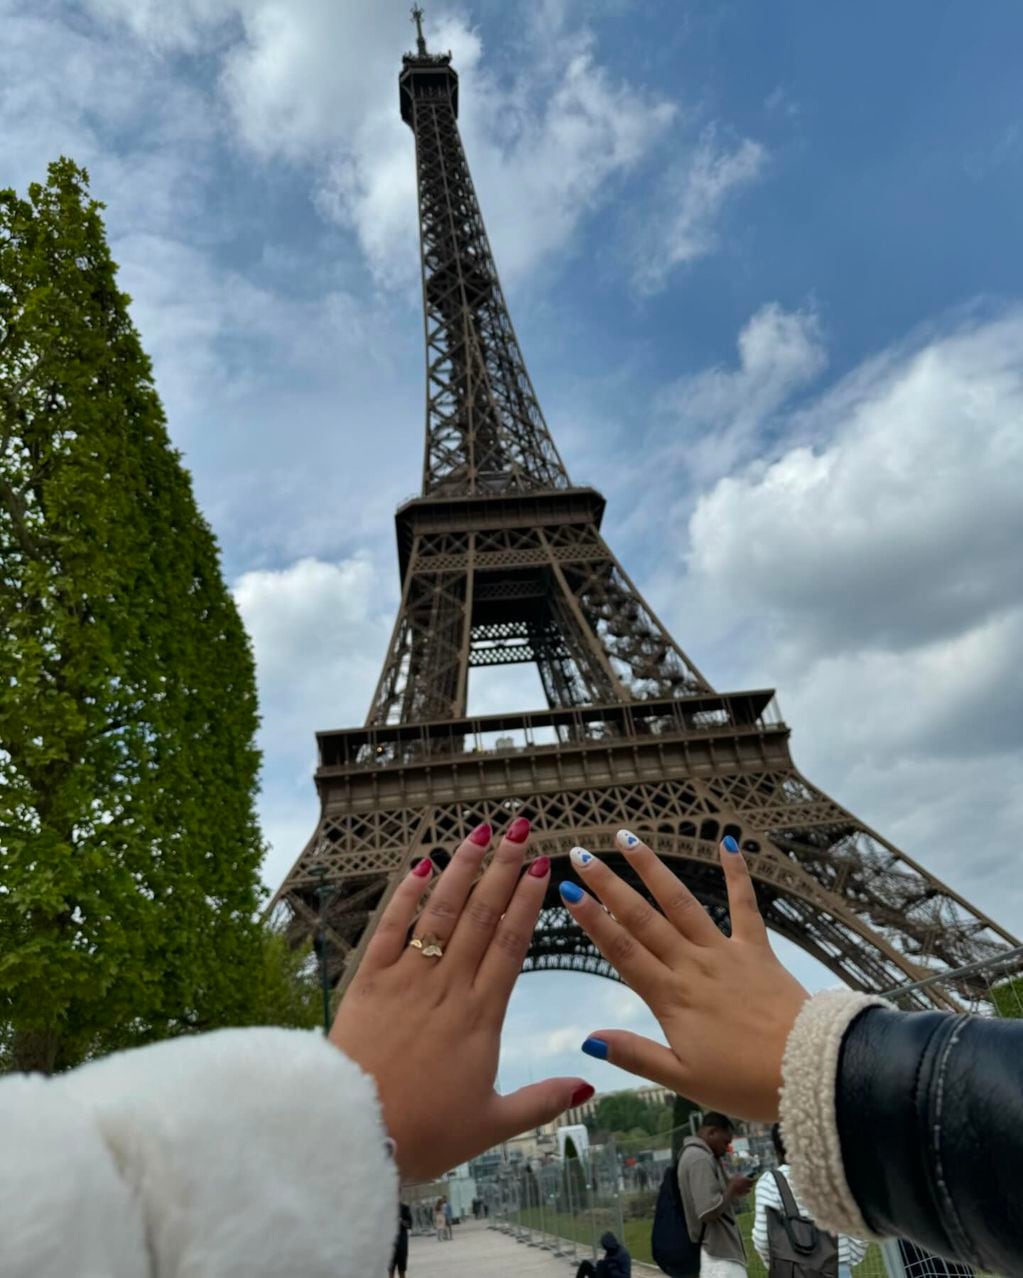 Naya Fácil y su hermana conocieron la Torre Eiffel, en Paris. Un sueño que tenían desde pequeñitas.